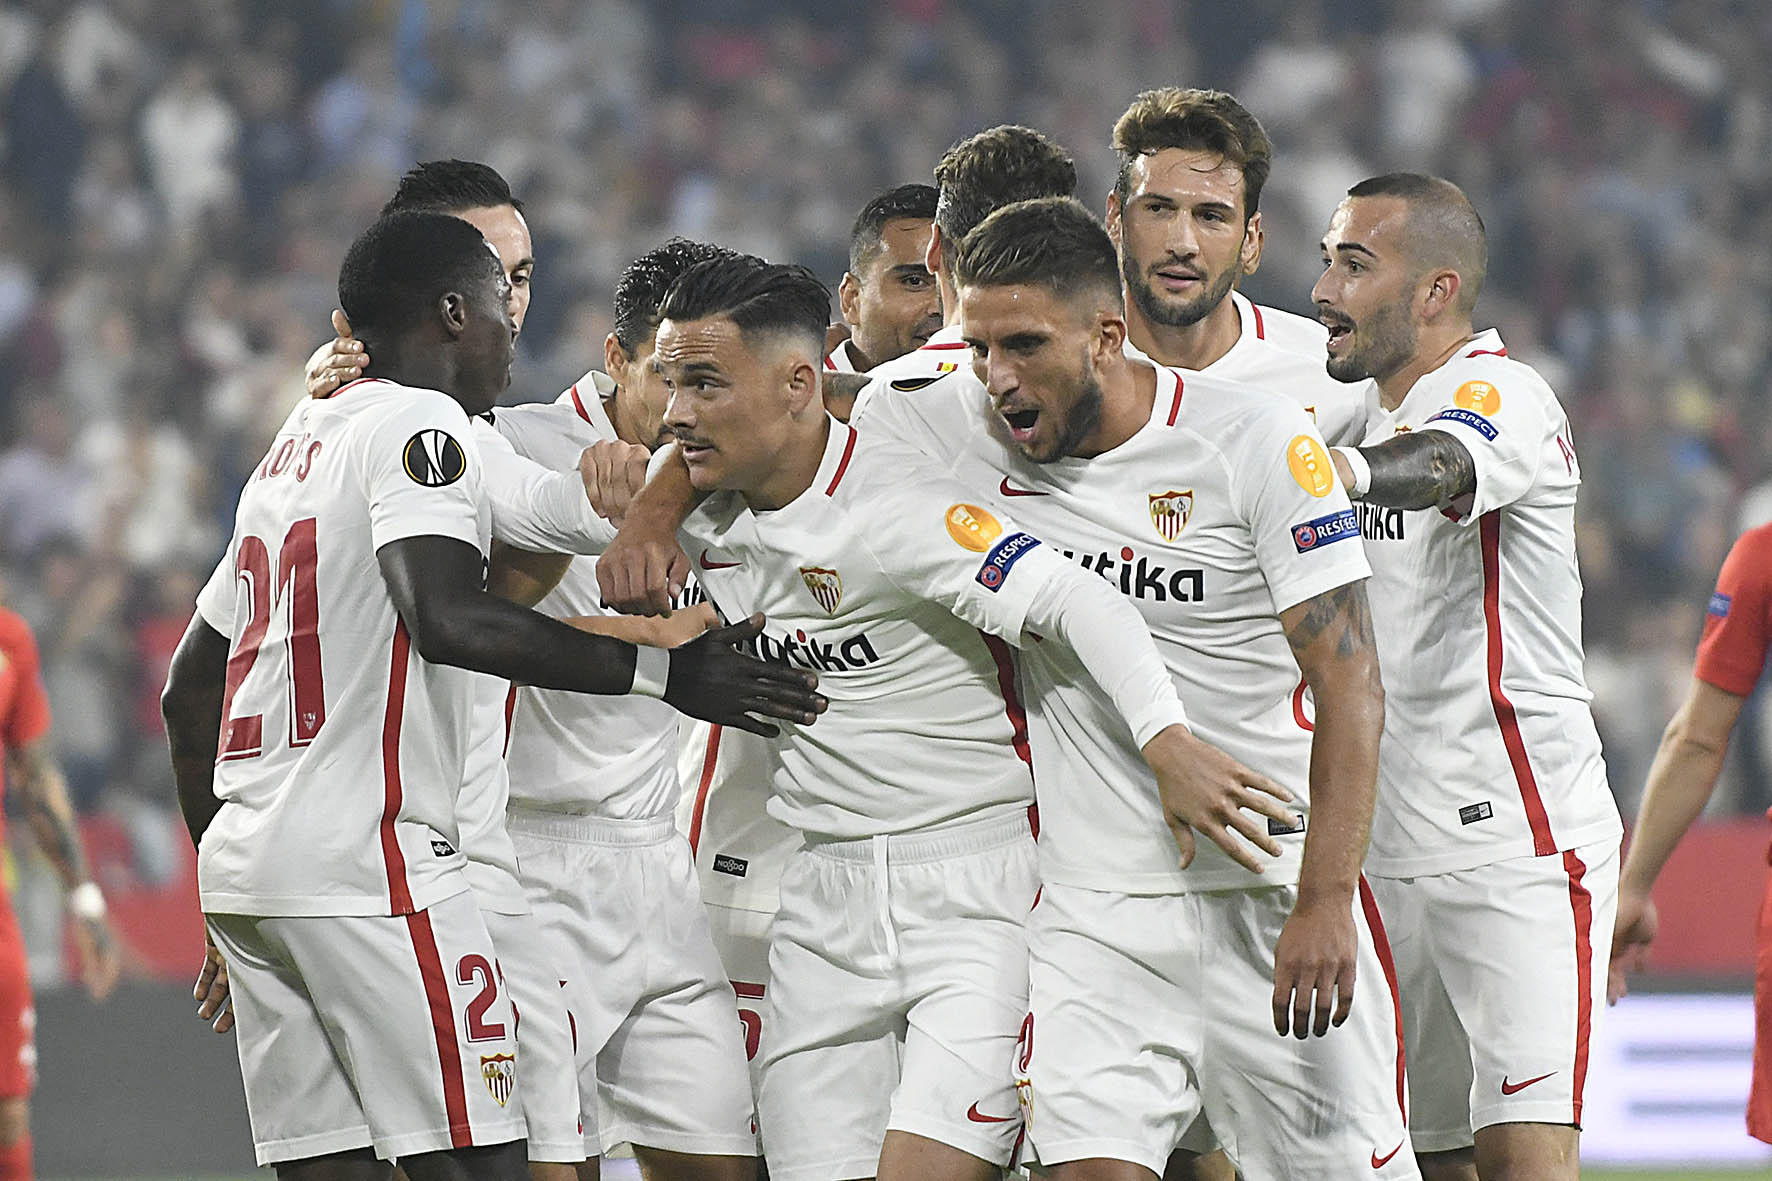 El Sevilla FC celebra un gol ante el Akhisarspor